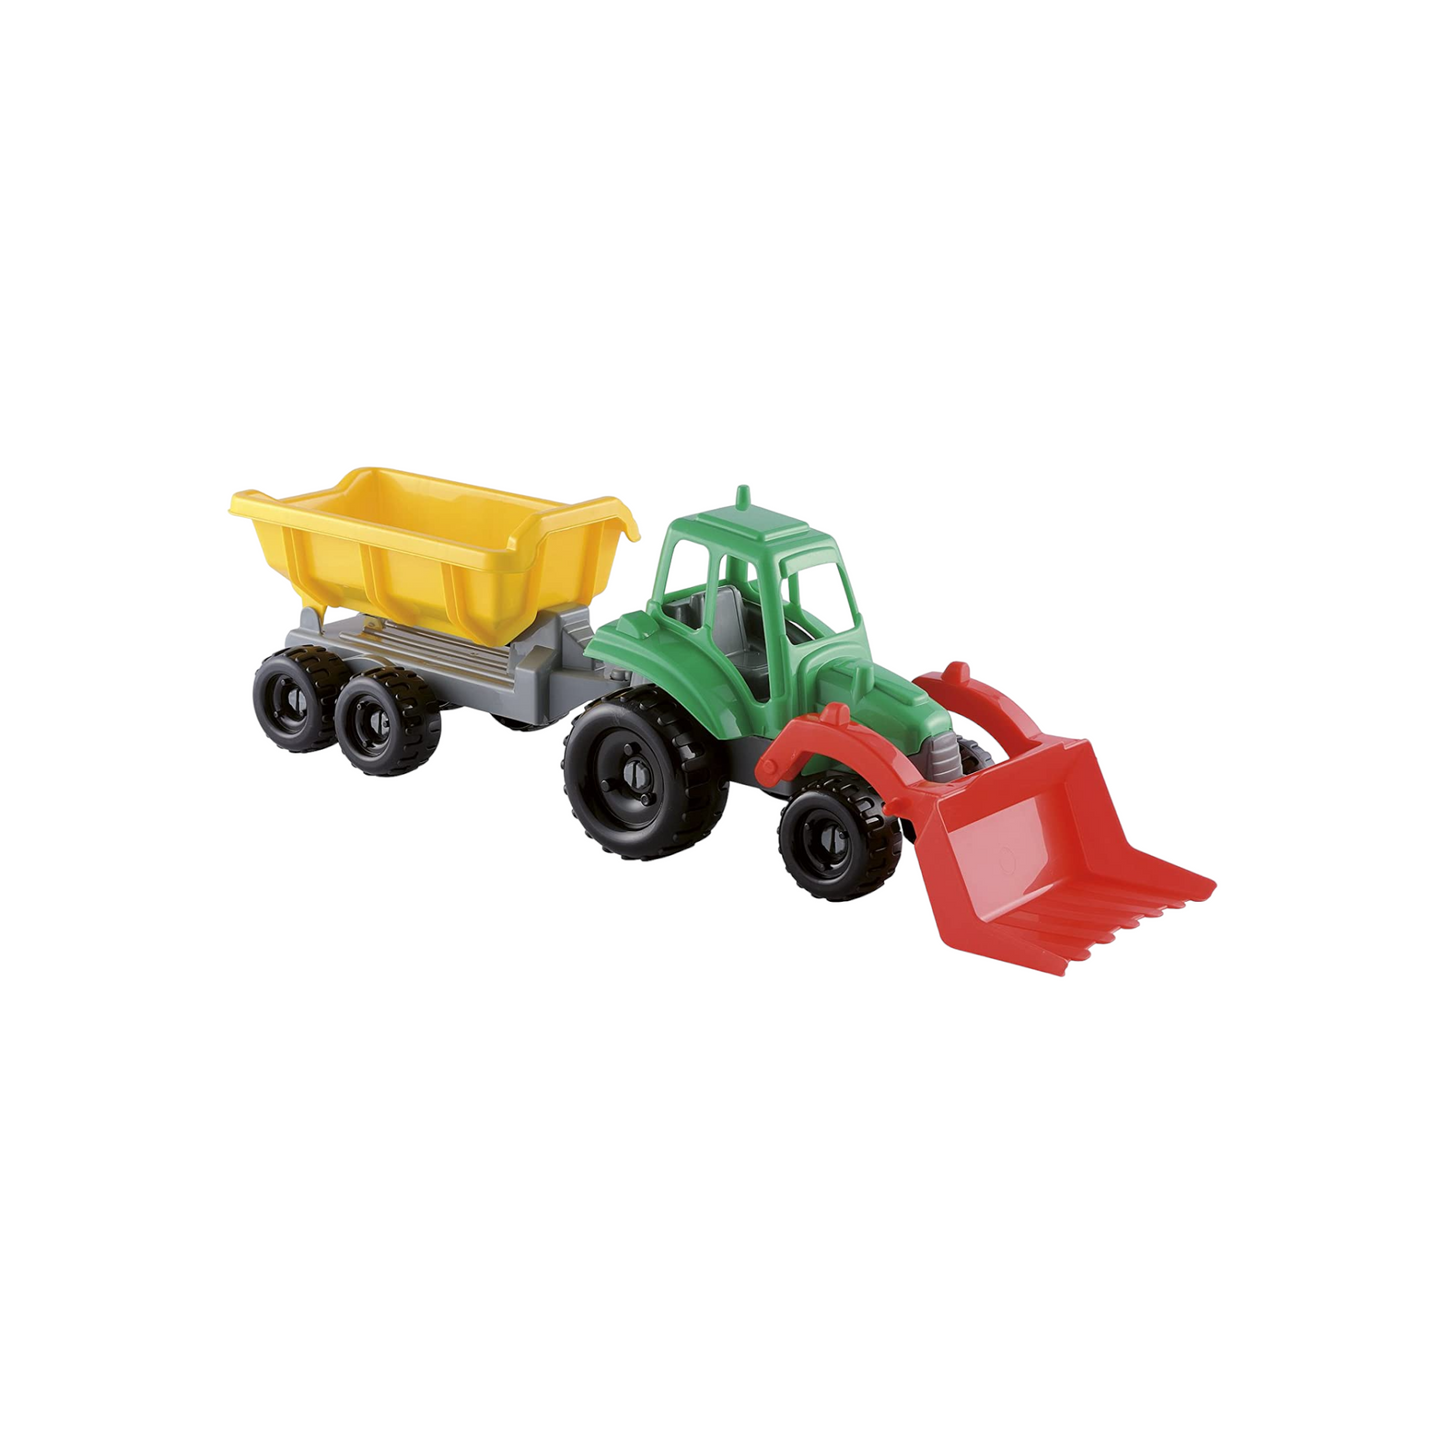 Jucarie tractor multicolor si remorca 51 cm